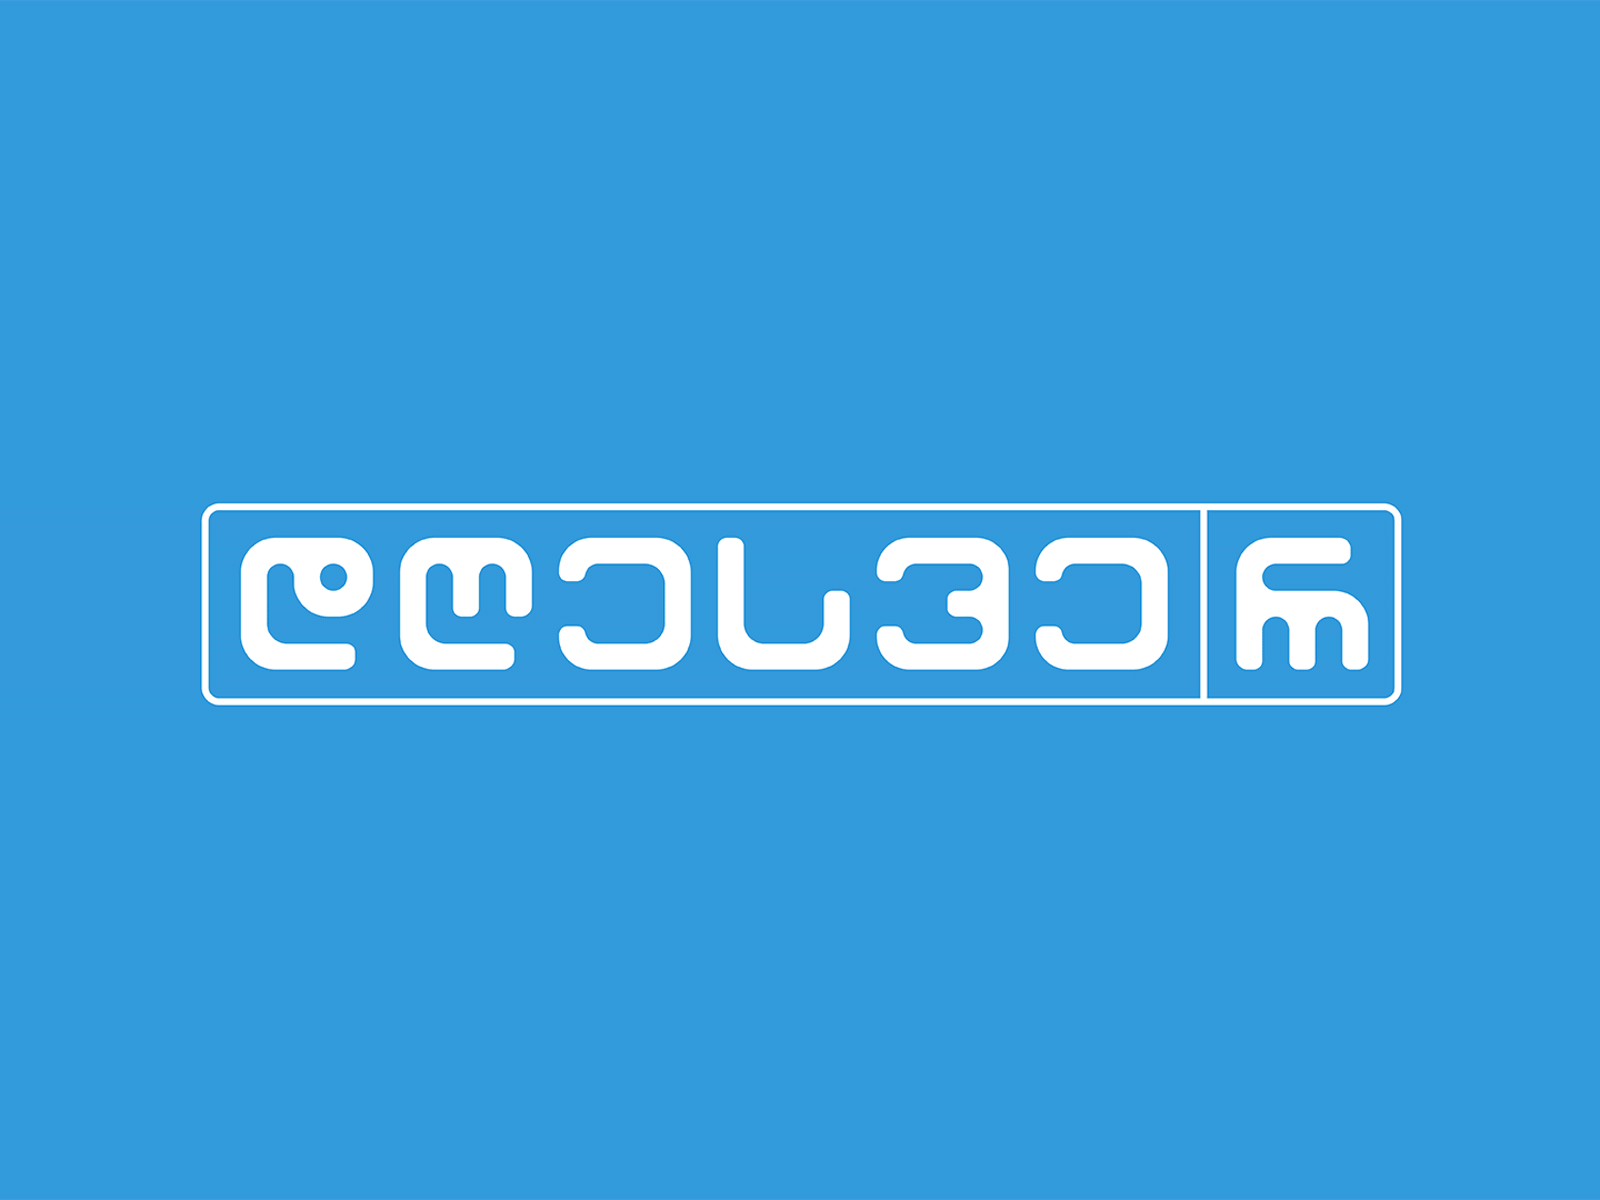 დღესვე/რ icondesign icons logo logotype slogo type typedesign typography typography logo